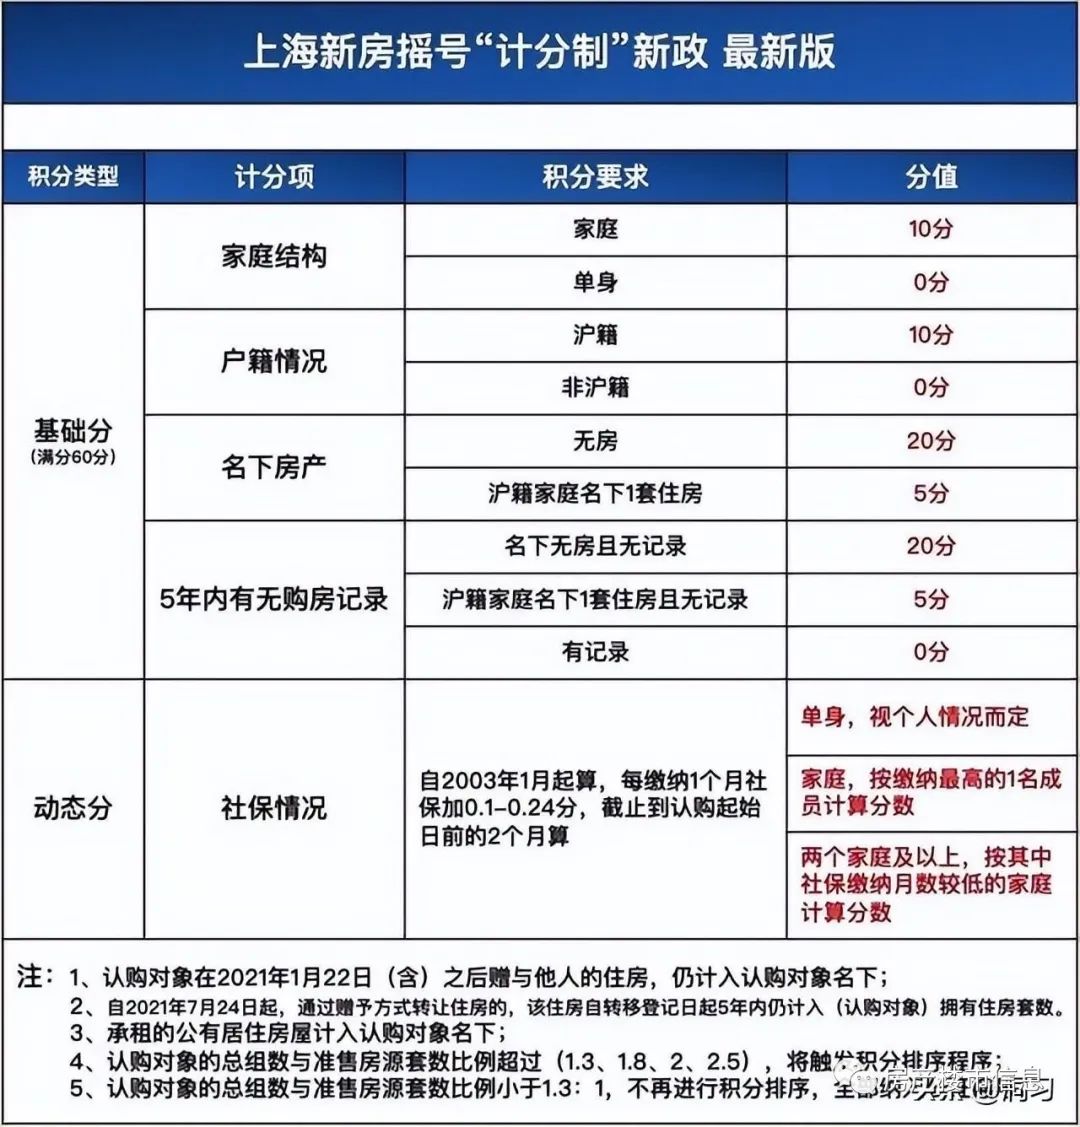 上海买房公积金贷款政策2015_上海2019公积金贷款新政_上海买房公积金贷款年限